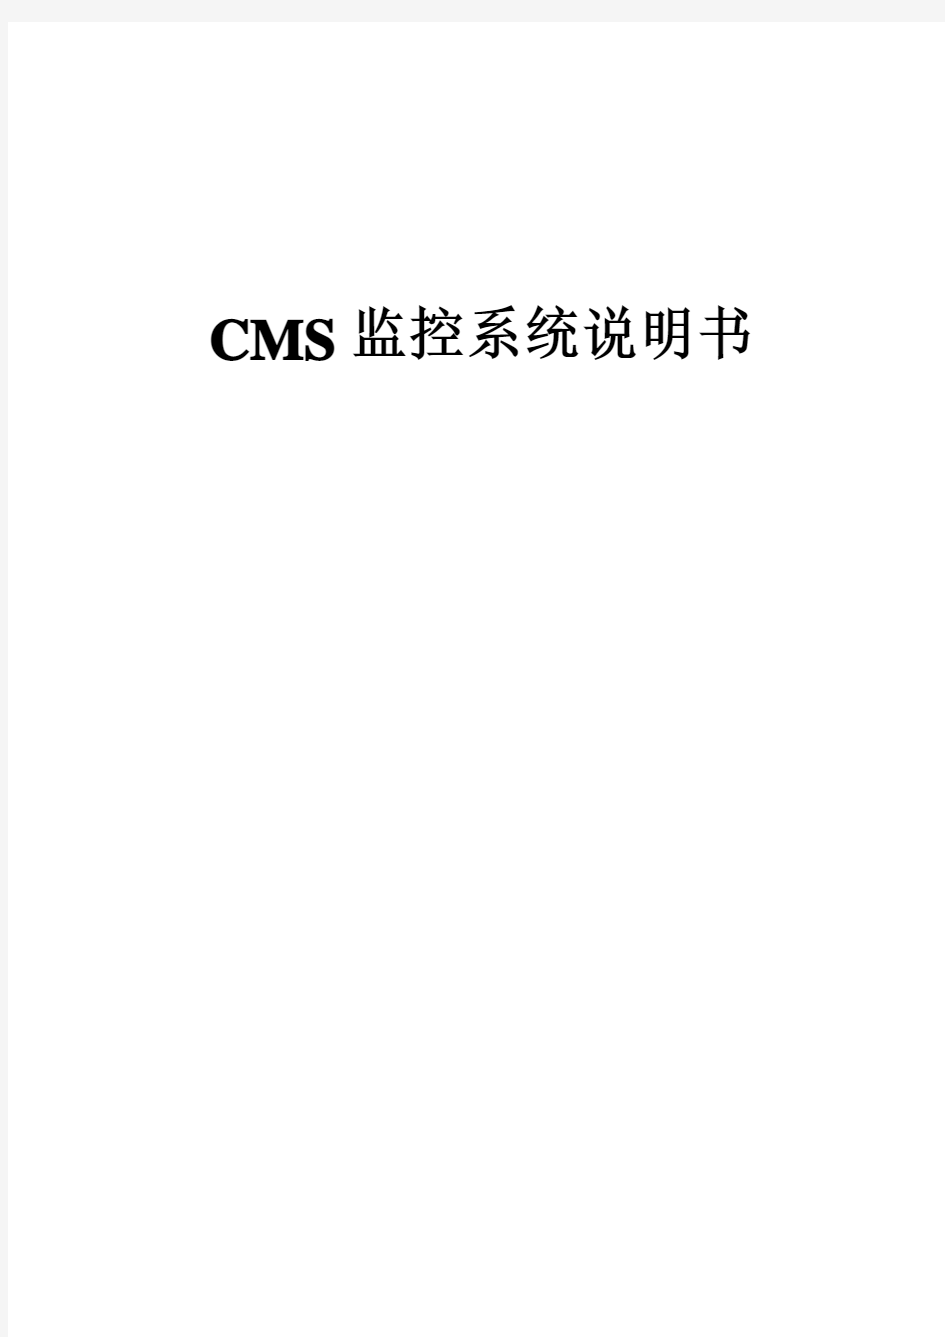 CMS监控系统说明书-中文